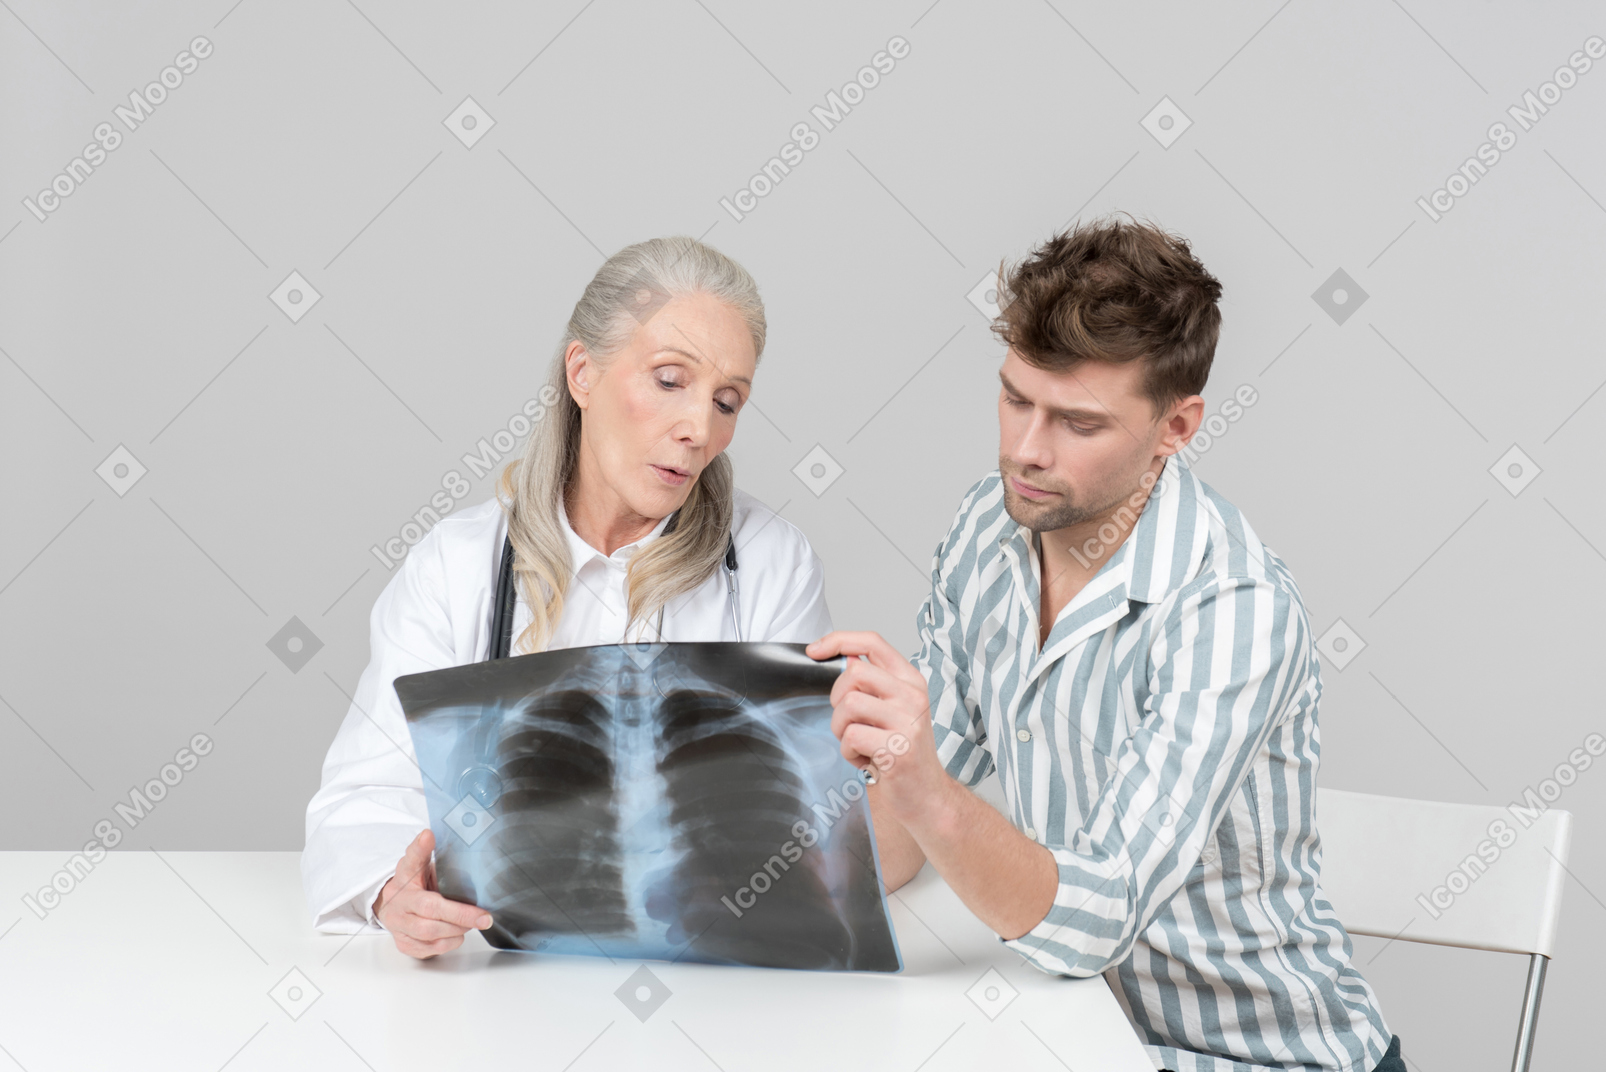 Doctora de edad explicando una radiografía a un paciente.